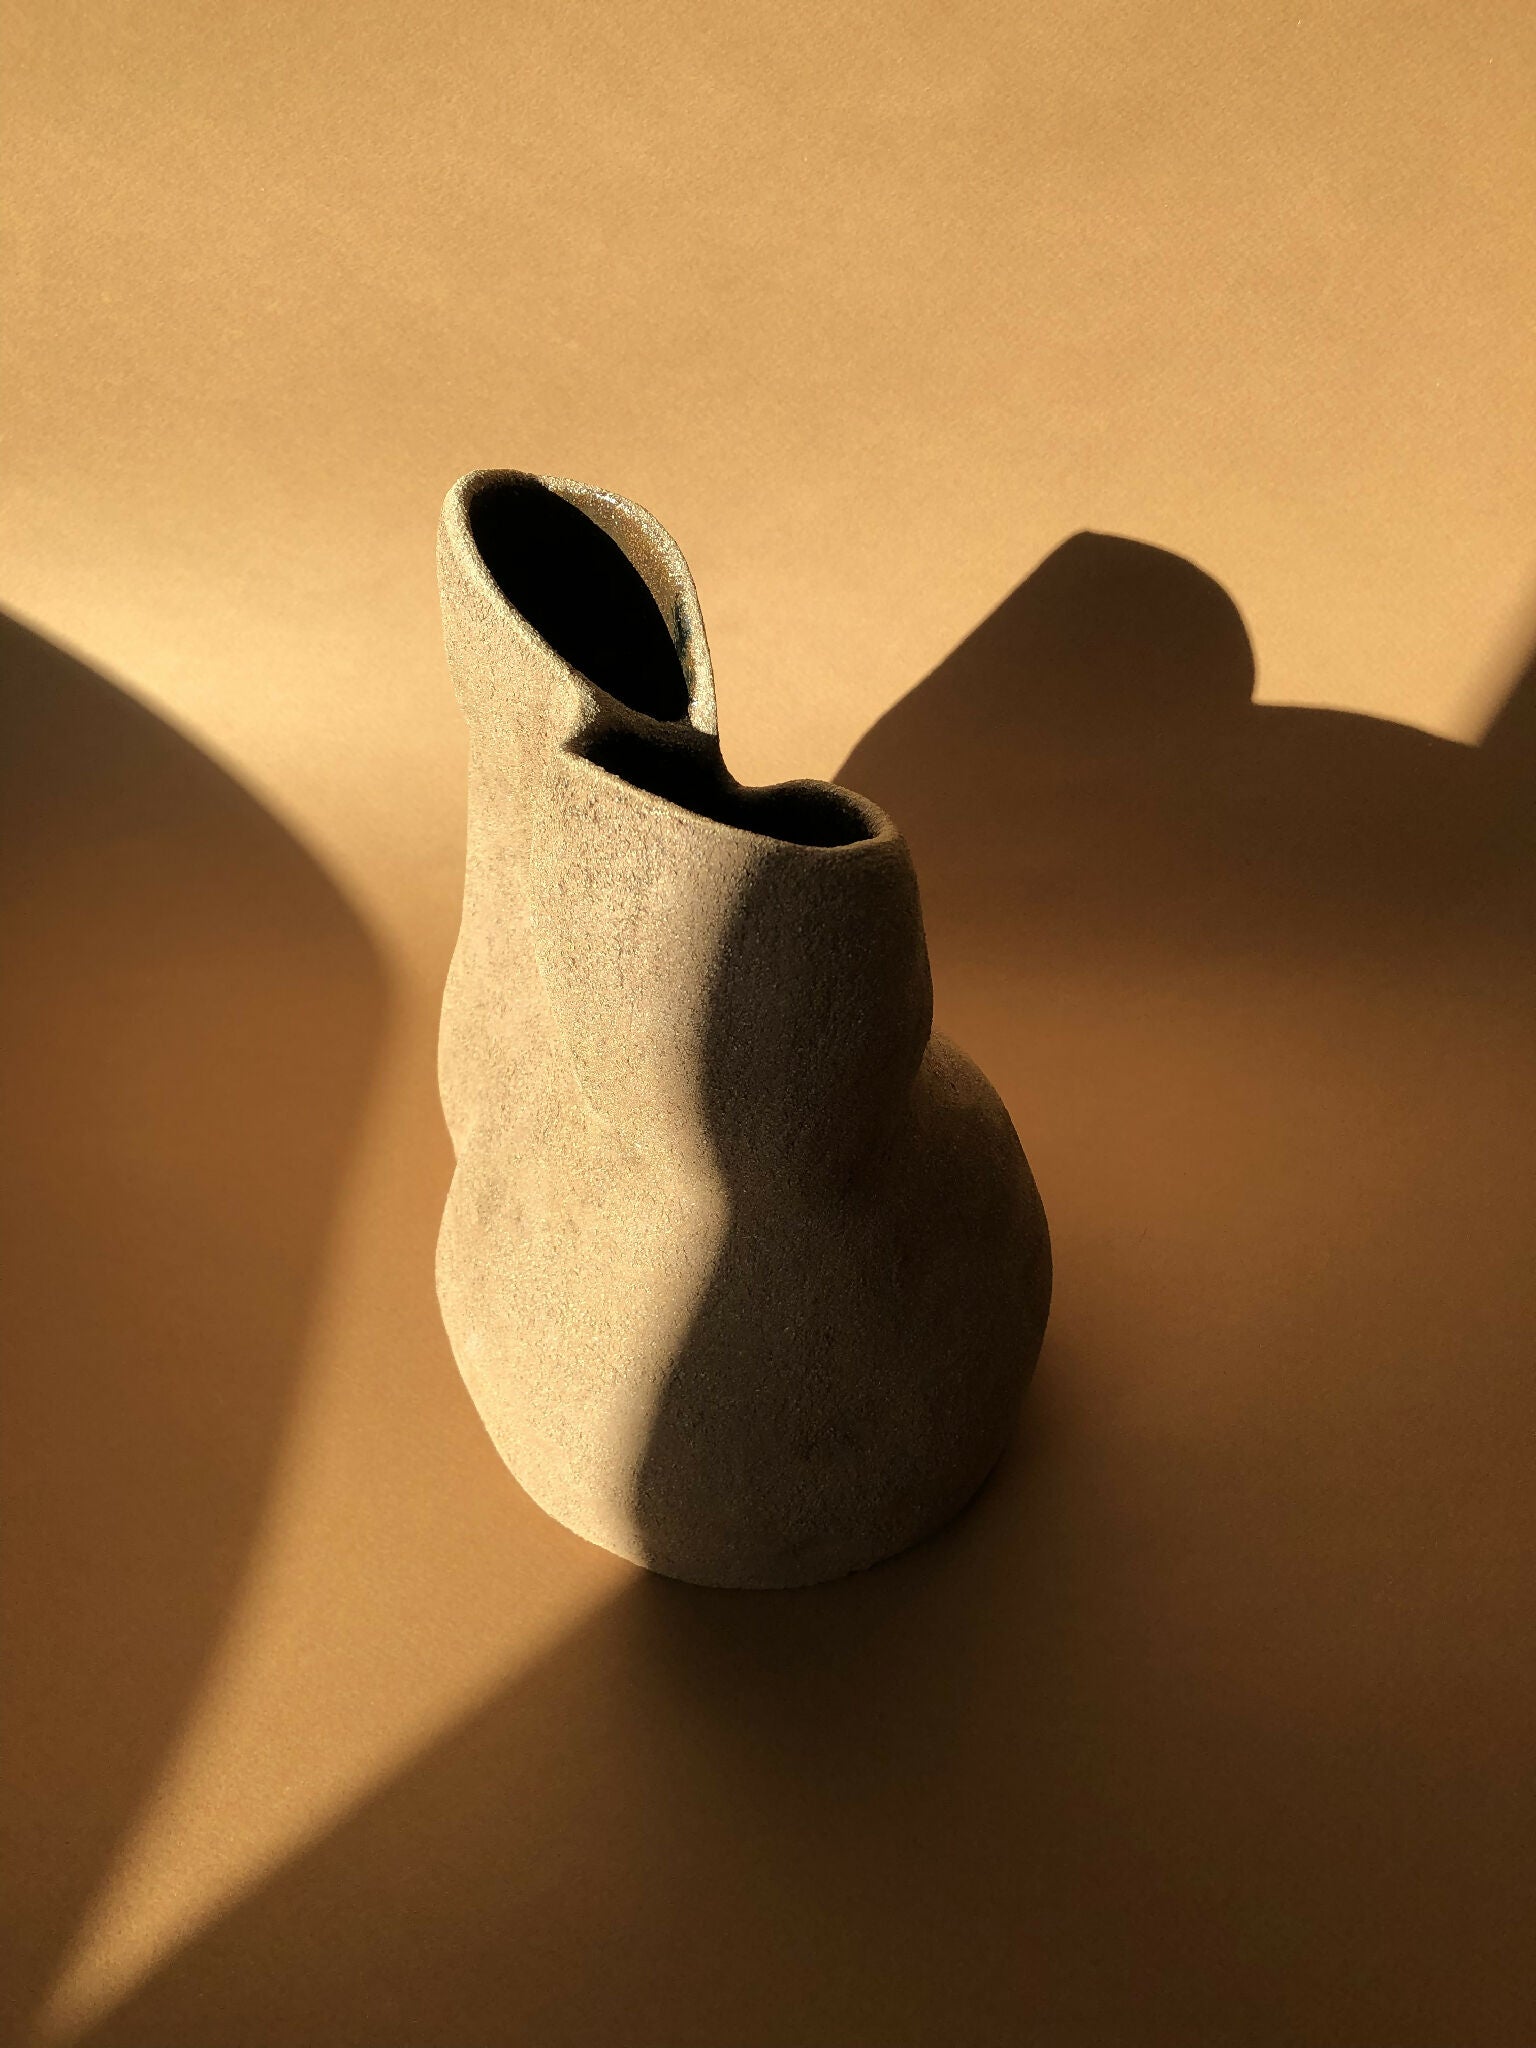 Vase fait-main ceramique travail artisanal artiste francaise